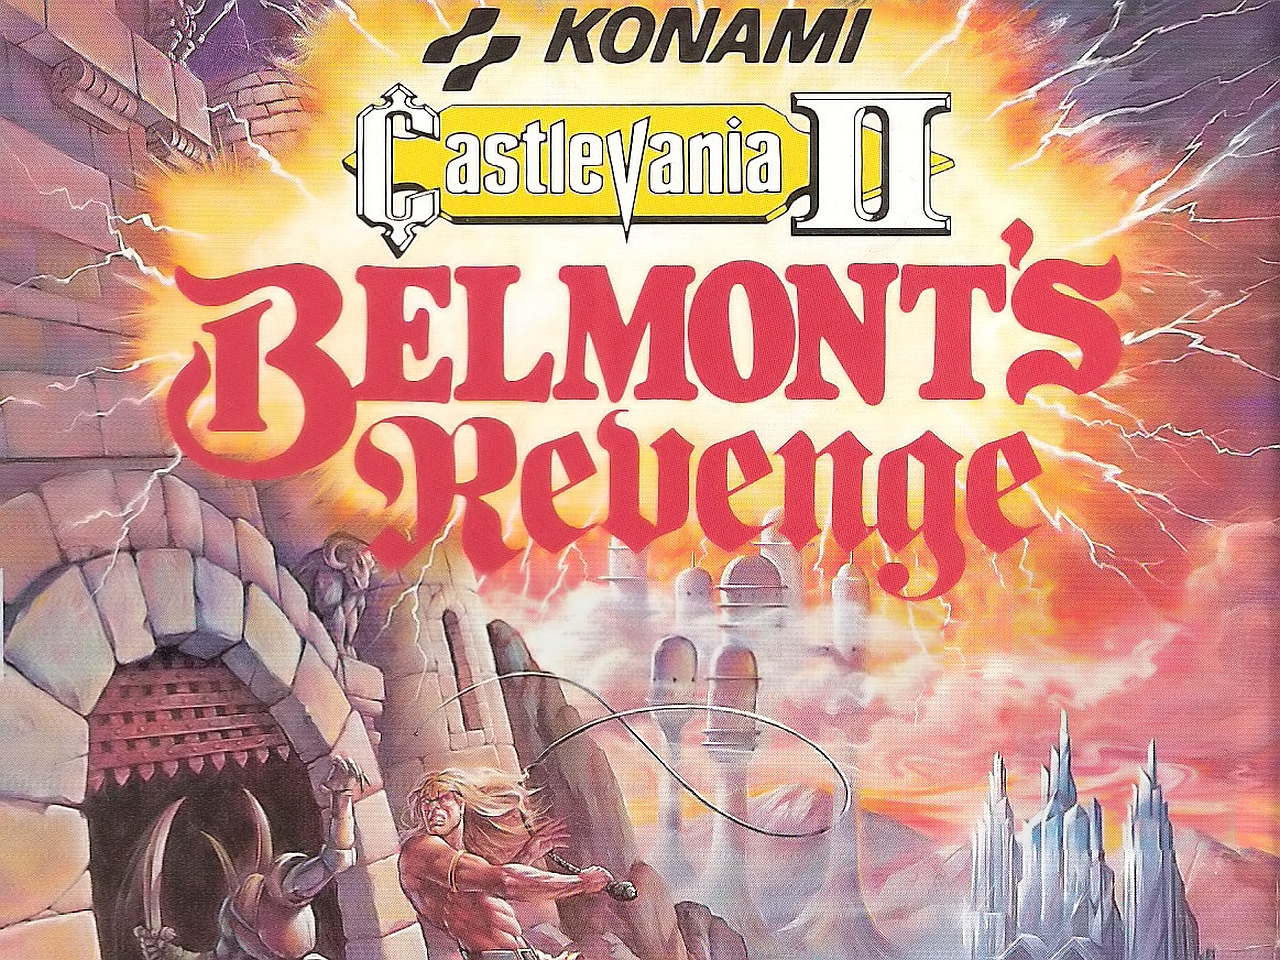 Скачать обои бесплатно Видеоигры, Castlevania Ii: Месть Бельмонта картинка на рабочий стол ПК